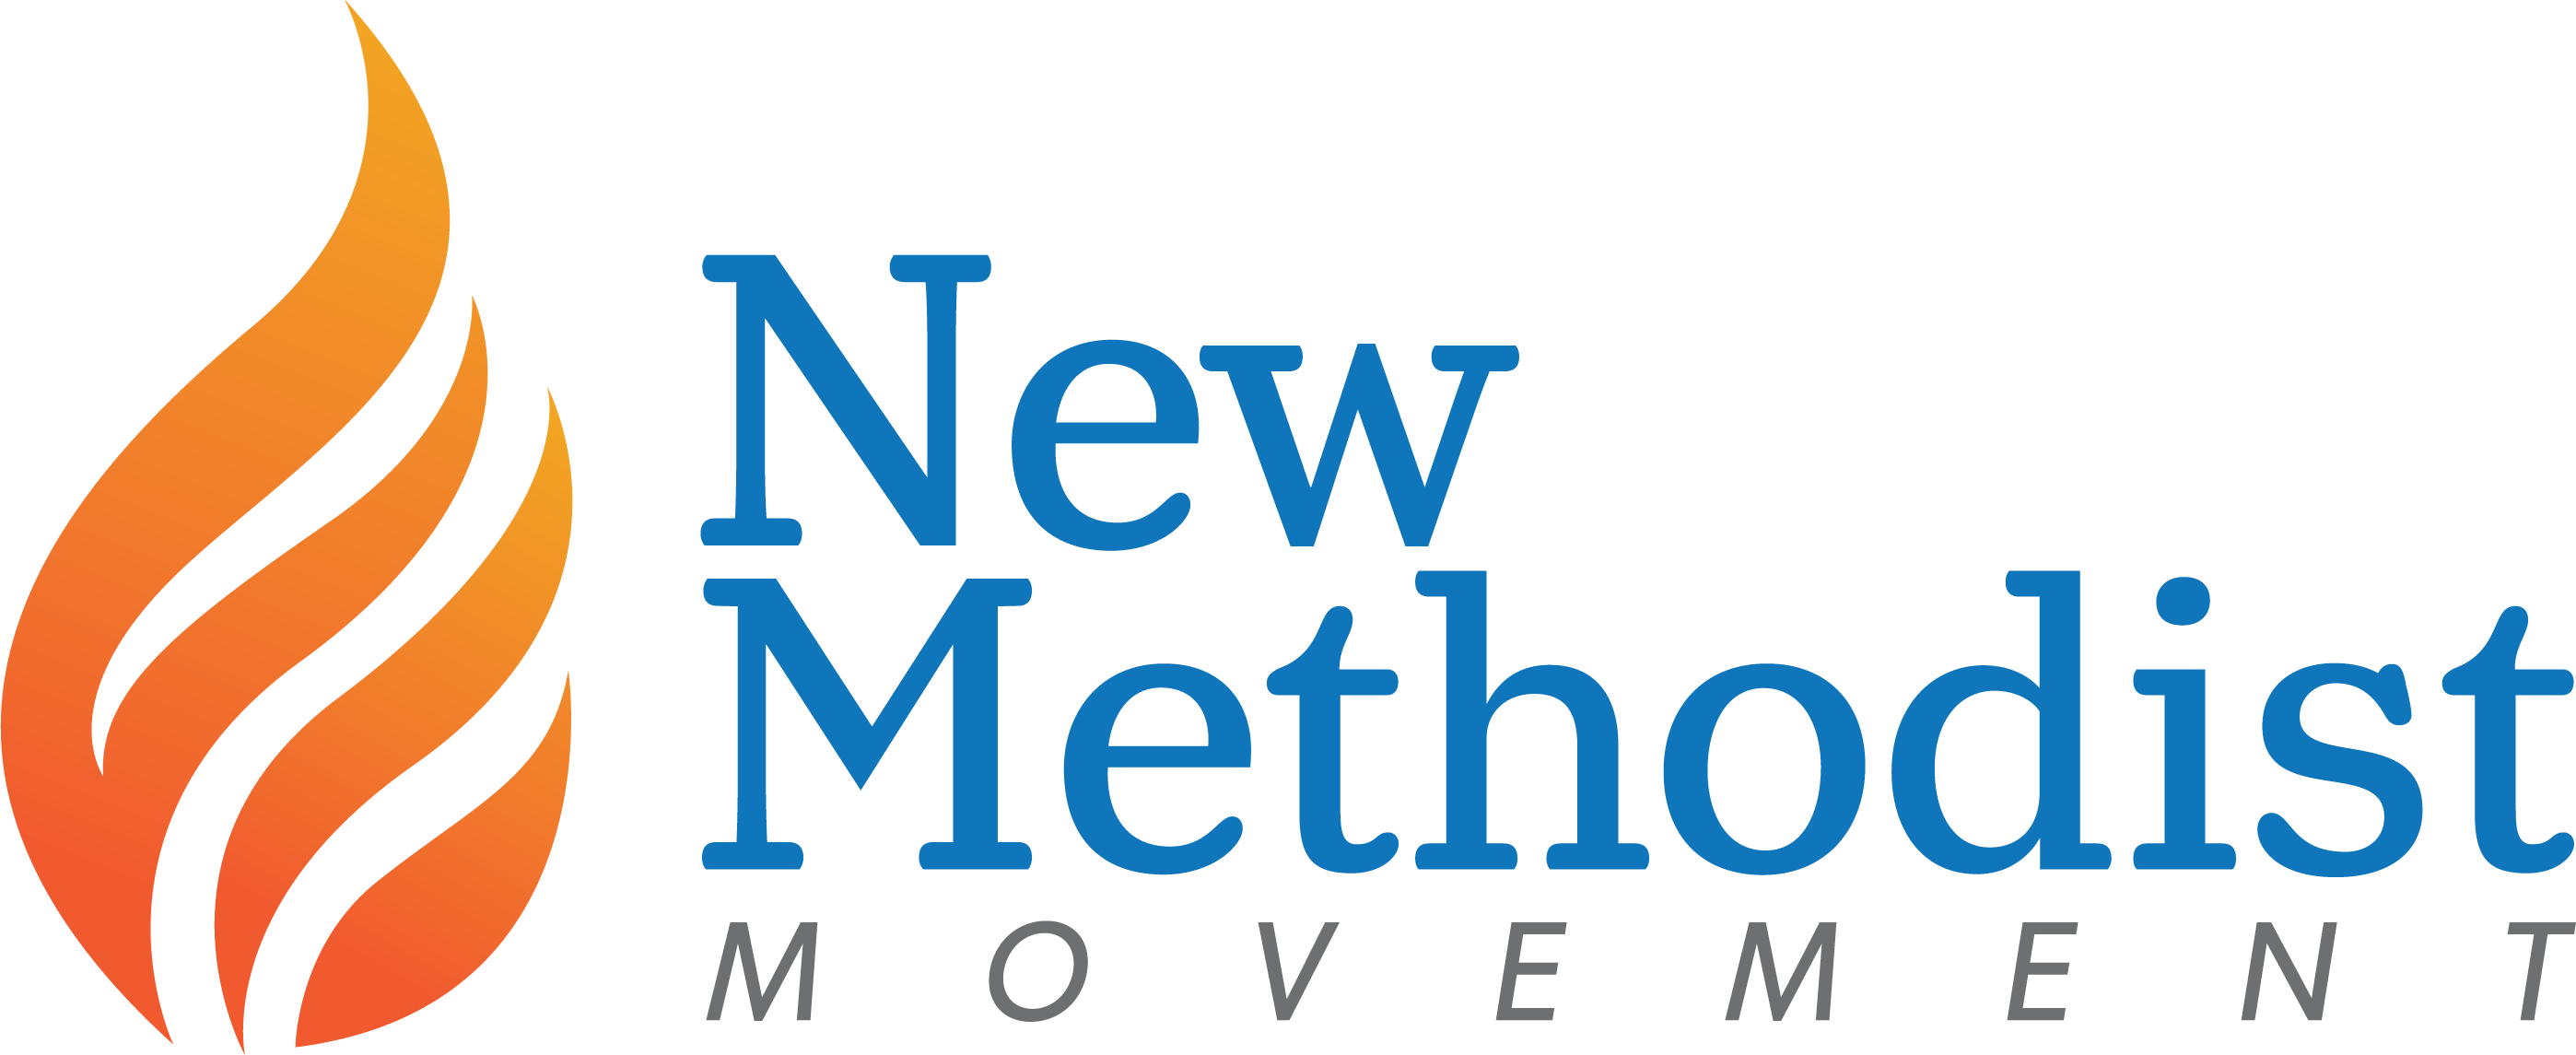 New Methodist Movement